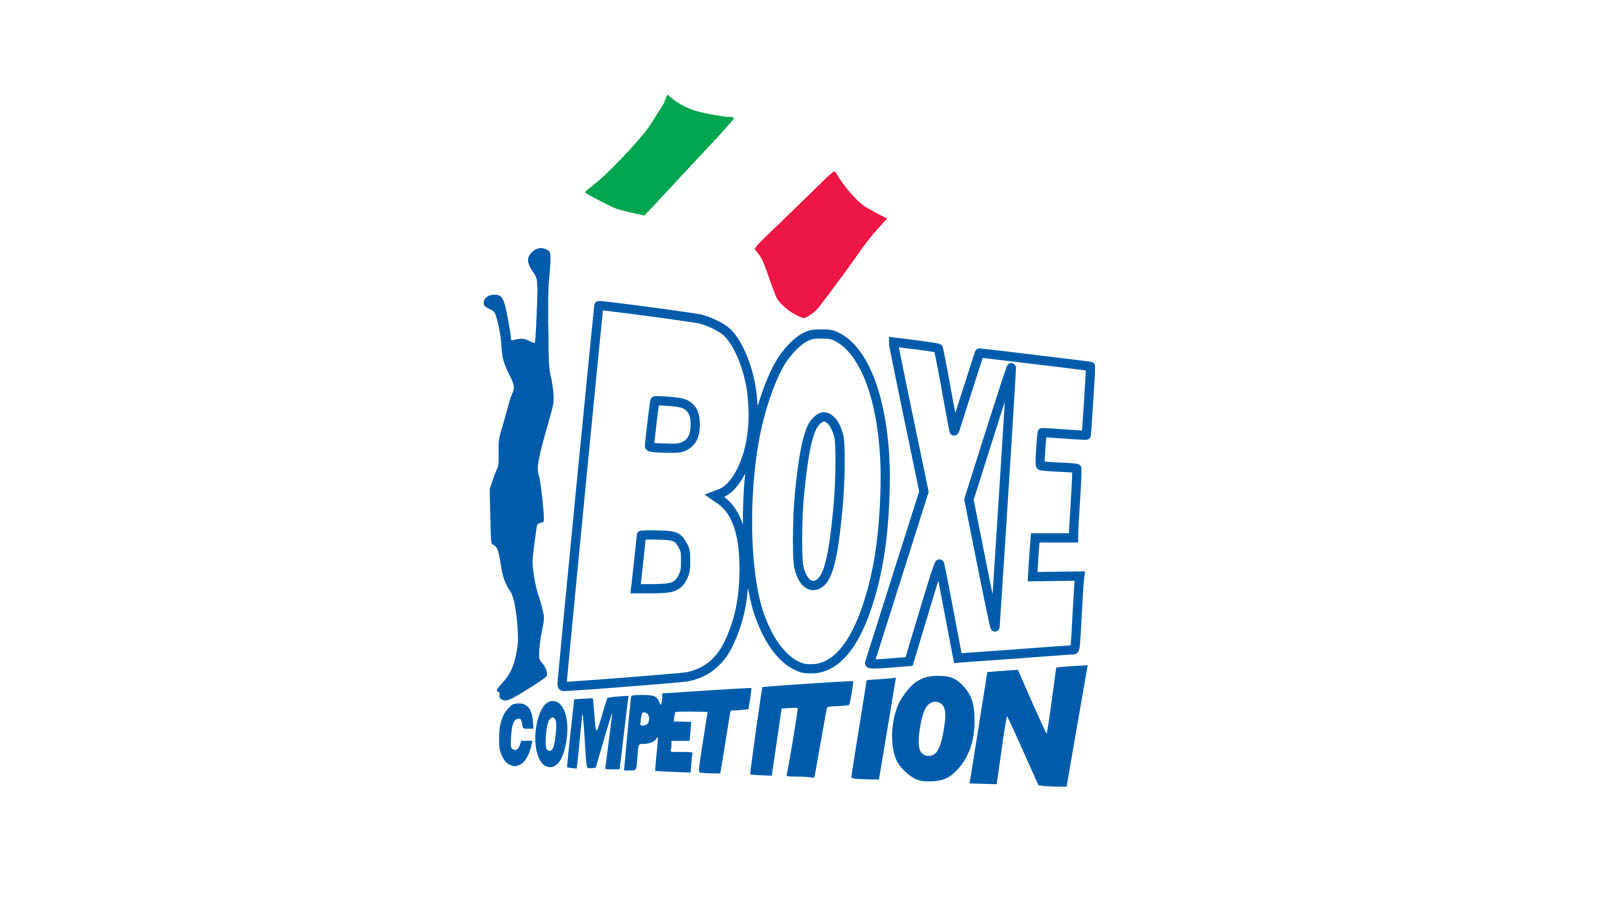 #PrePugilistica #BoxeCompetition SETTORE AMATORIALE GYM BOXE - IV° CORSO F.P.I. per ESPERTI in ALLENAMENTO FUNZIONALE - Graduatoria Iscritti e Info